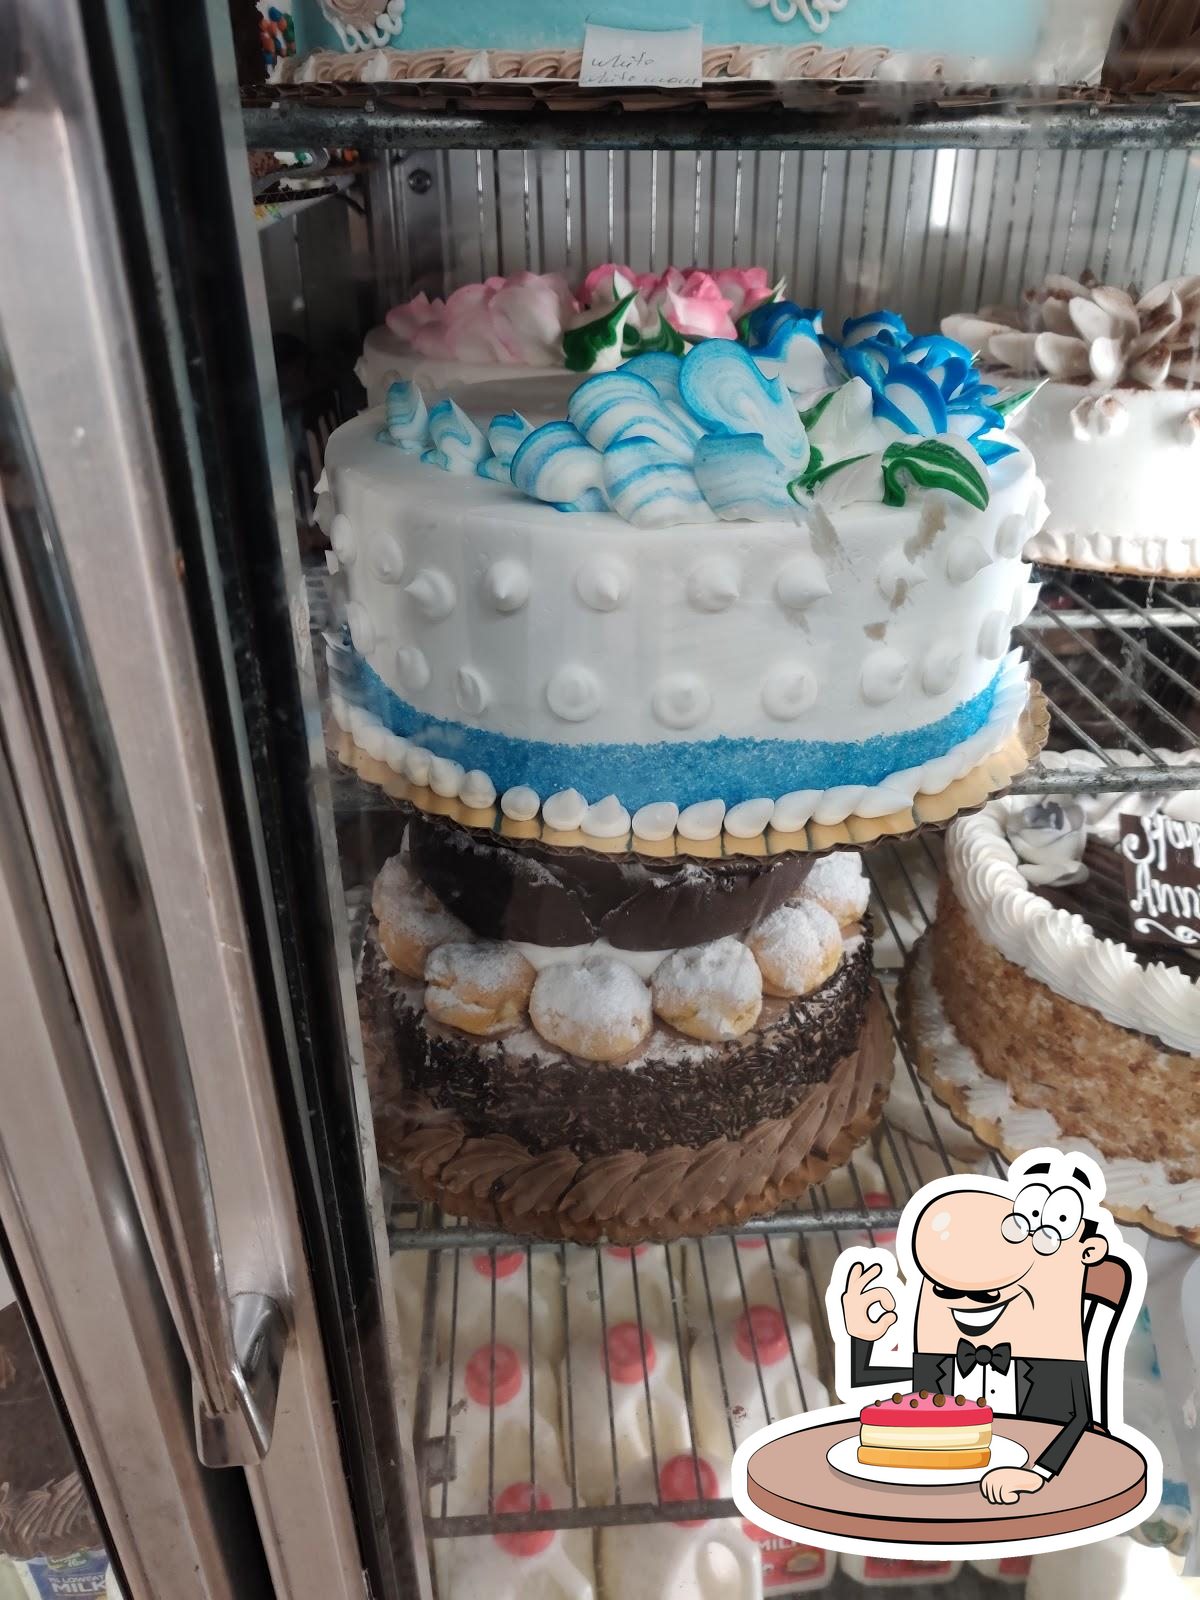 MH11 The Cake Shop, Ulhasnagar, Thane | Zomato